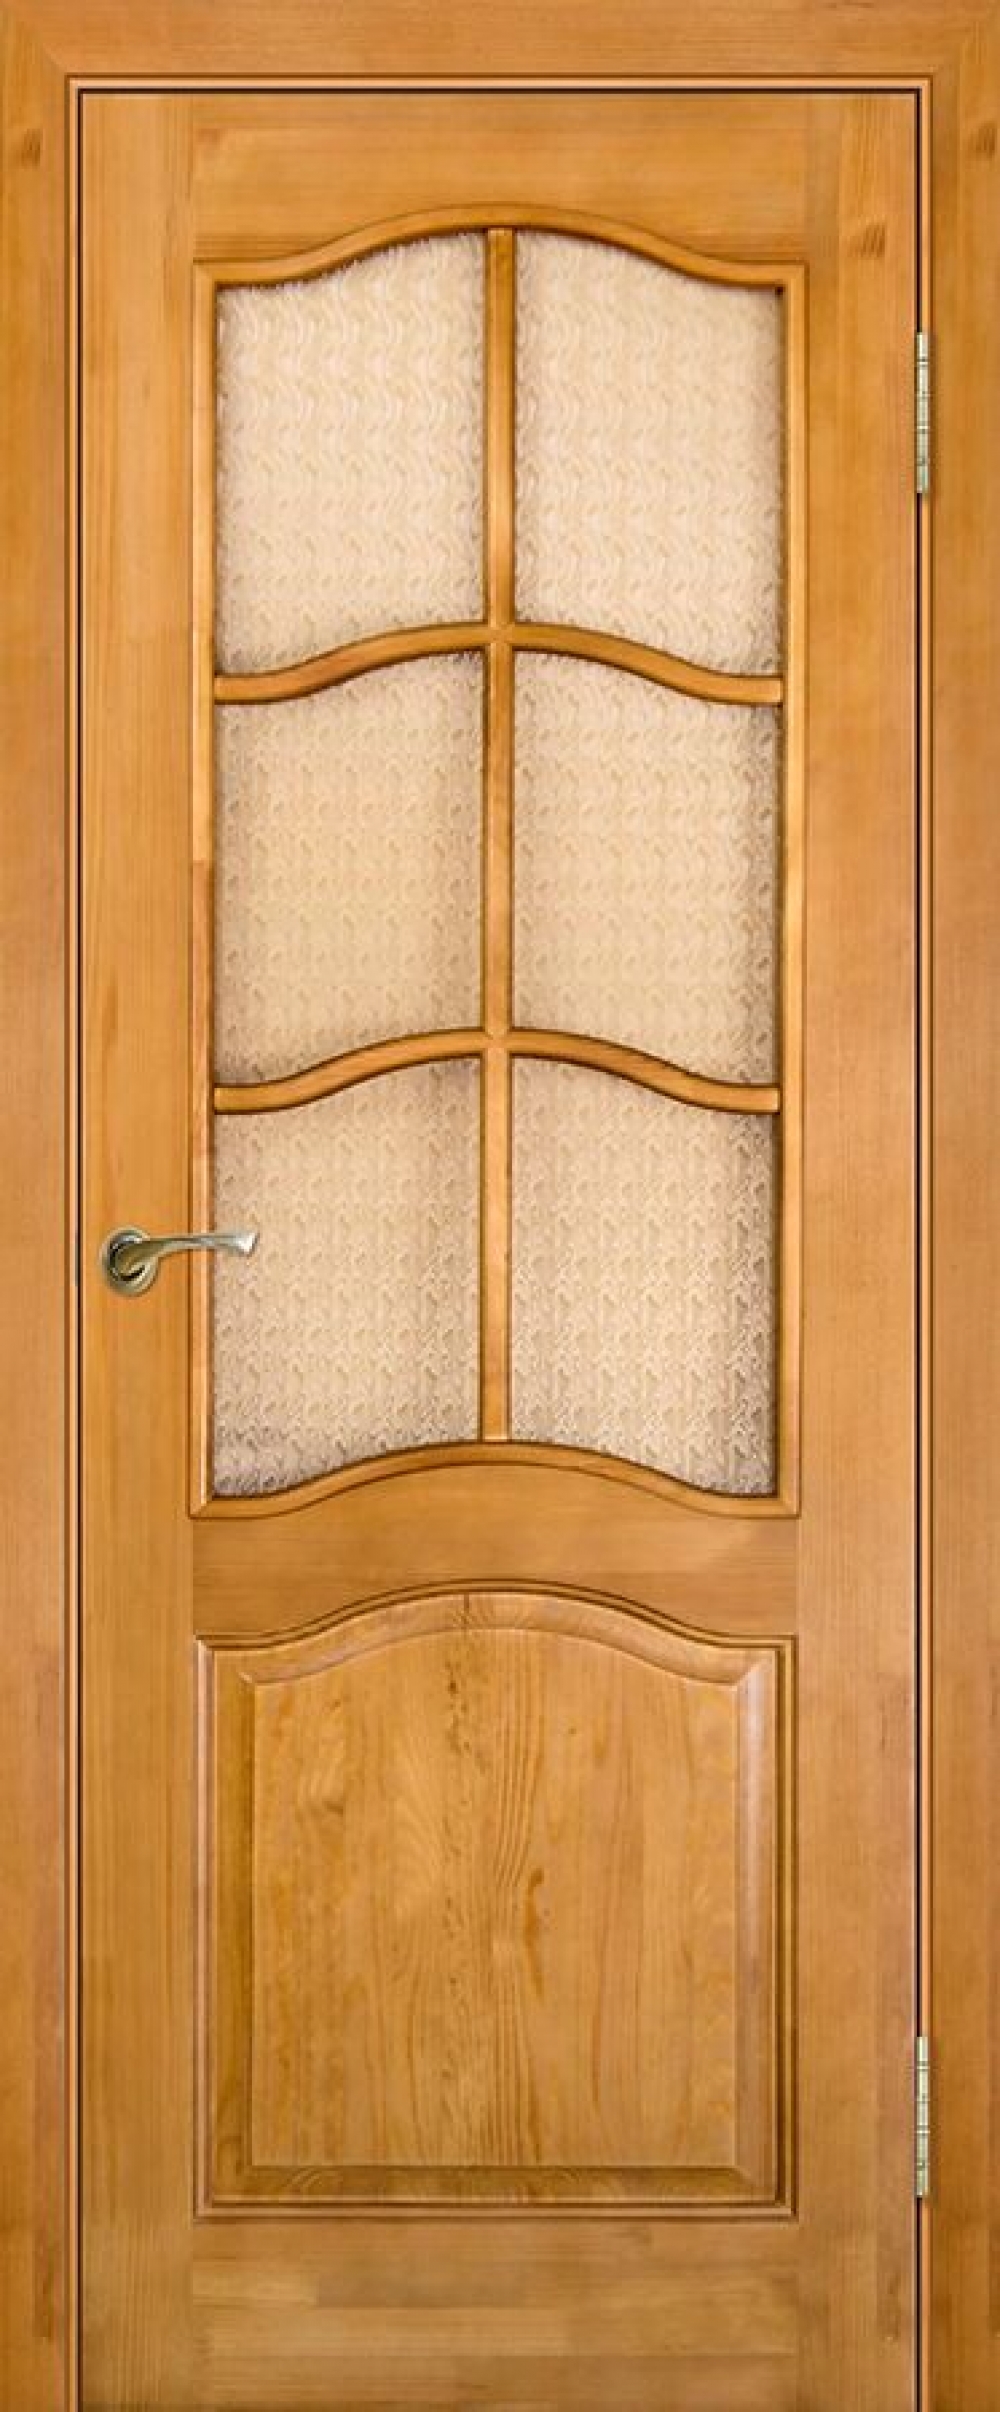 Межкомнатная дверь Юркас модель 7 сосна светлый лак